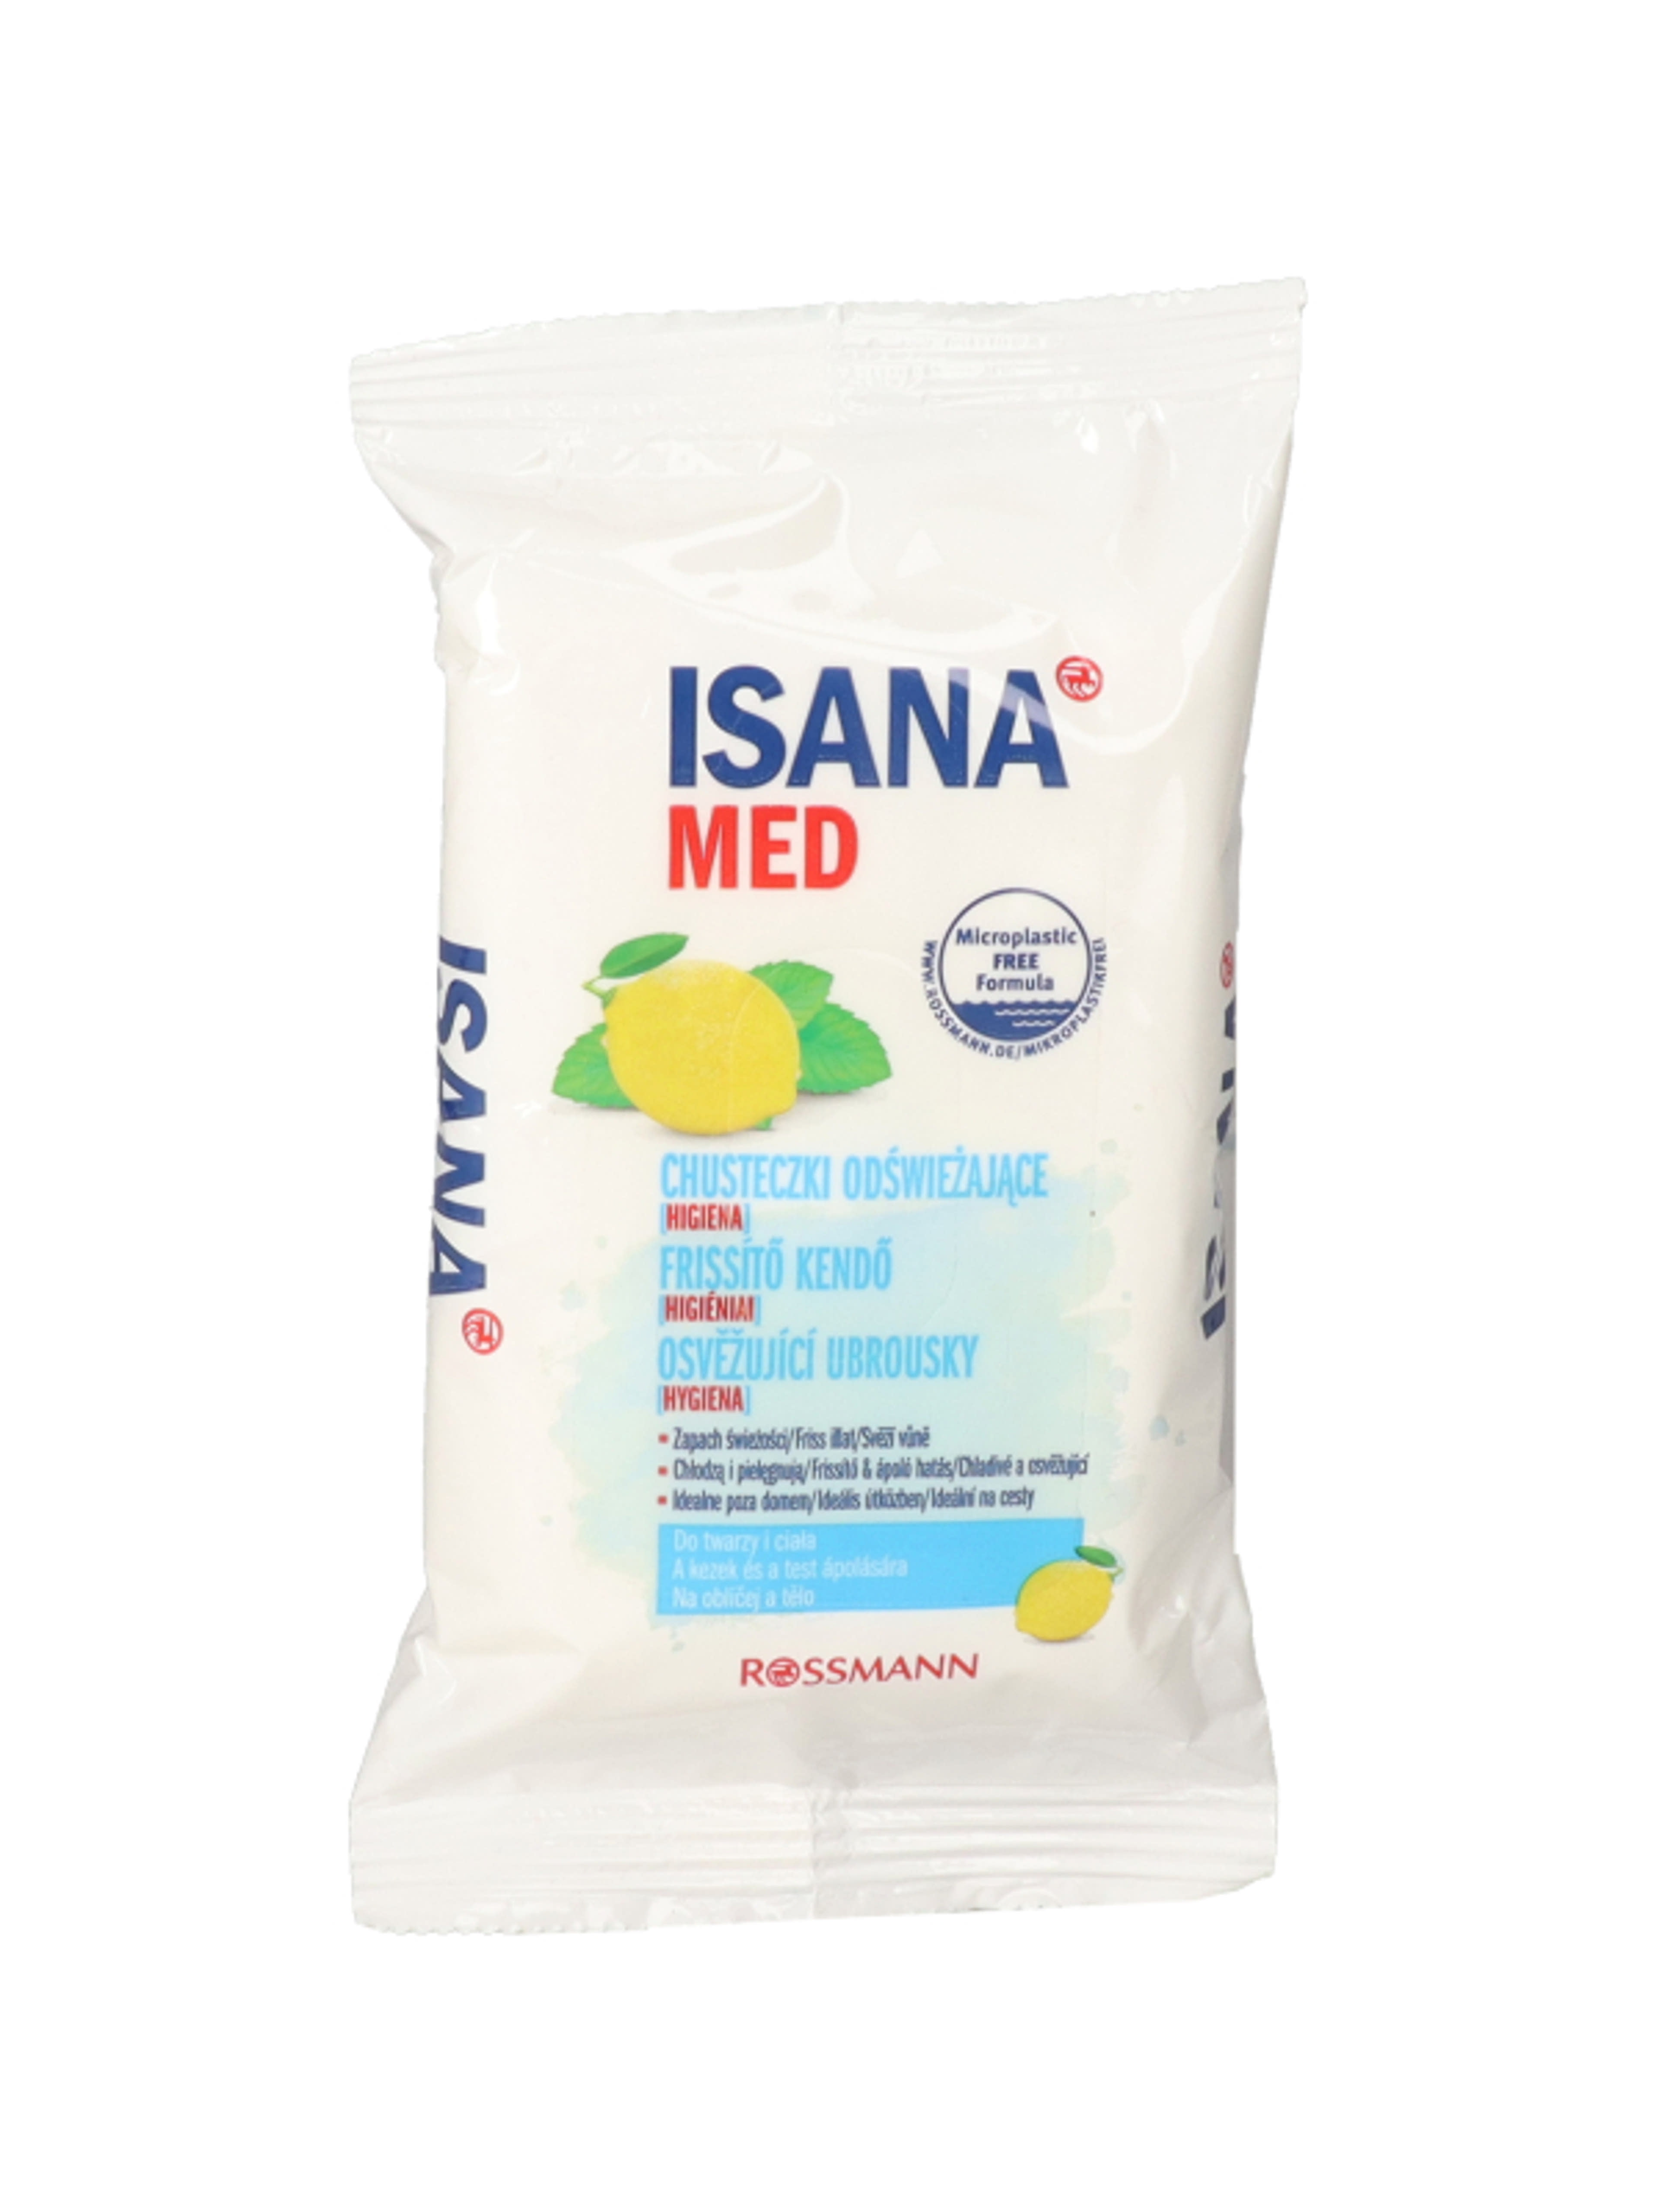 Isana Med higiéniai és frissítő kendő - 15 db-2